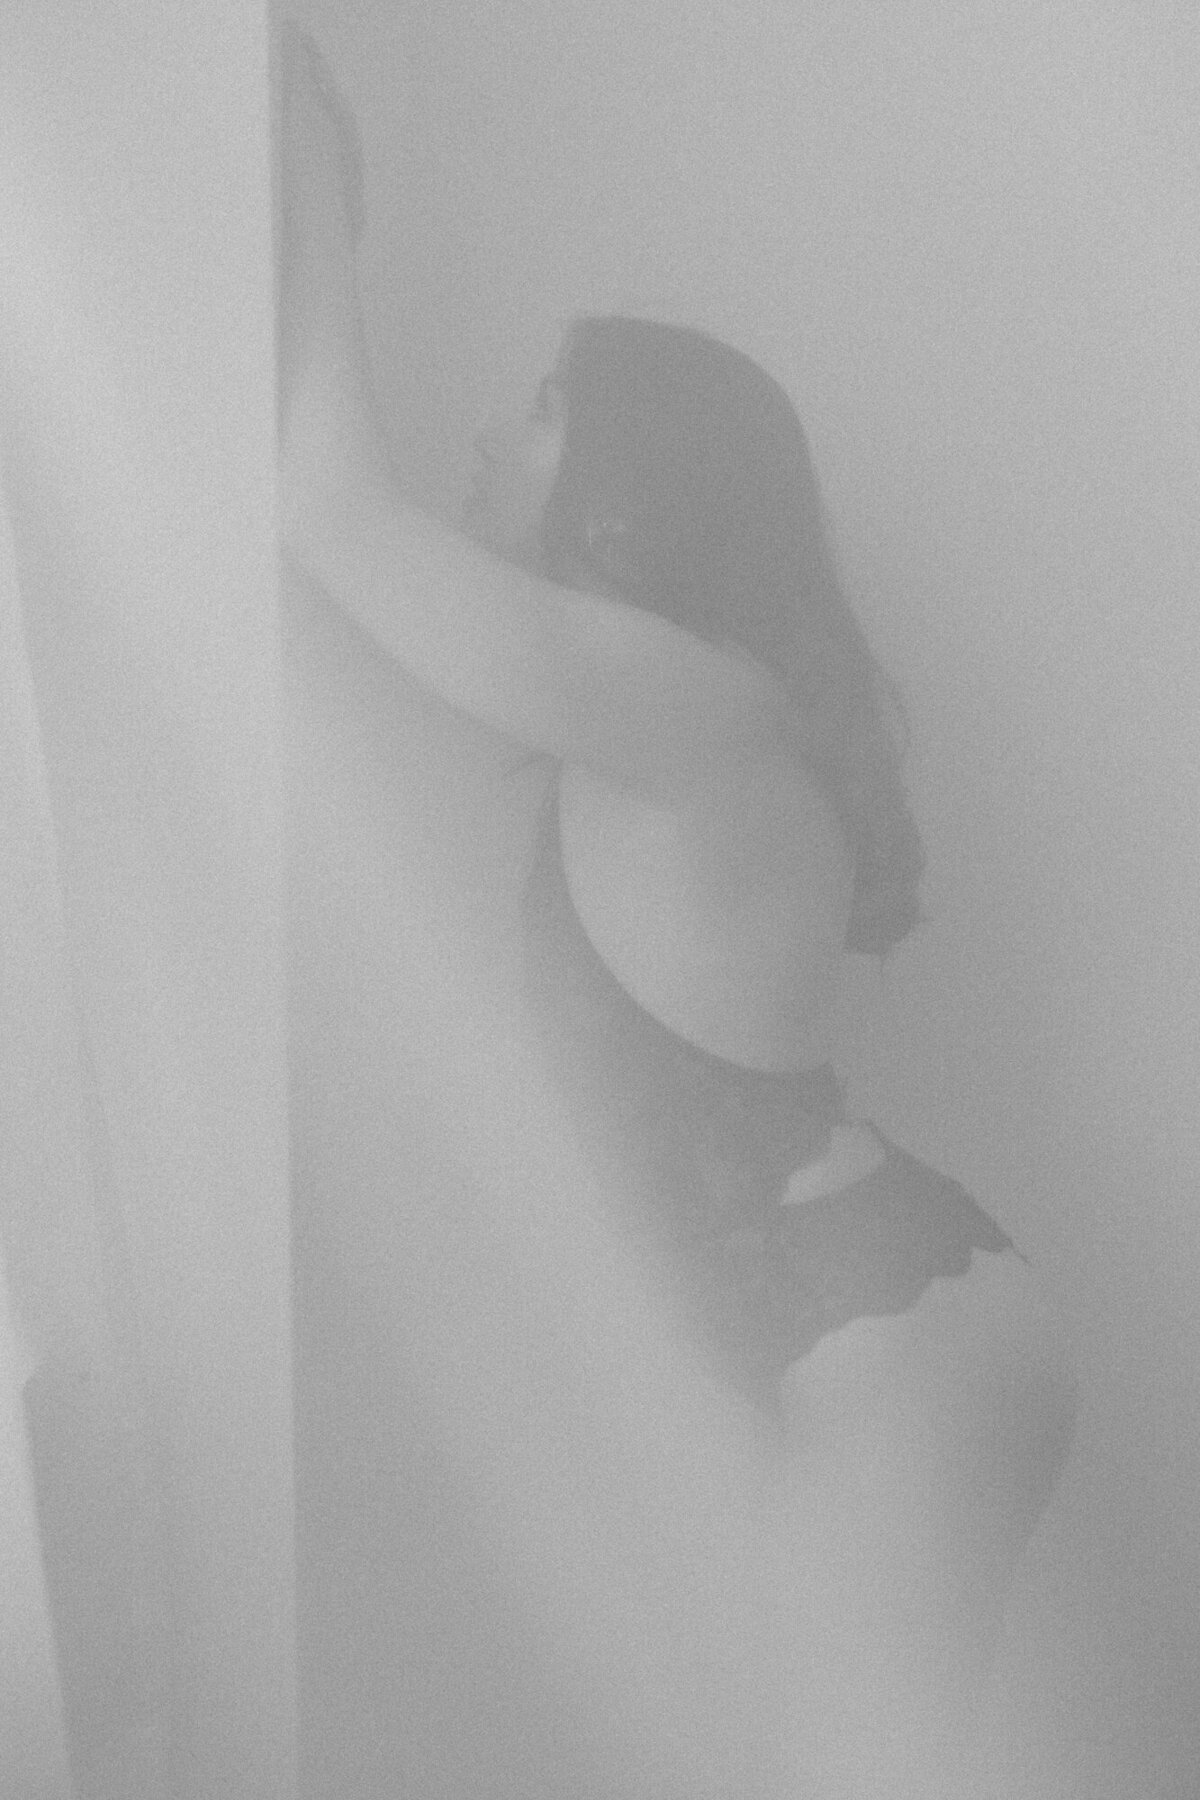 A boudoir photo shot through sheer curtains